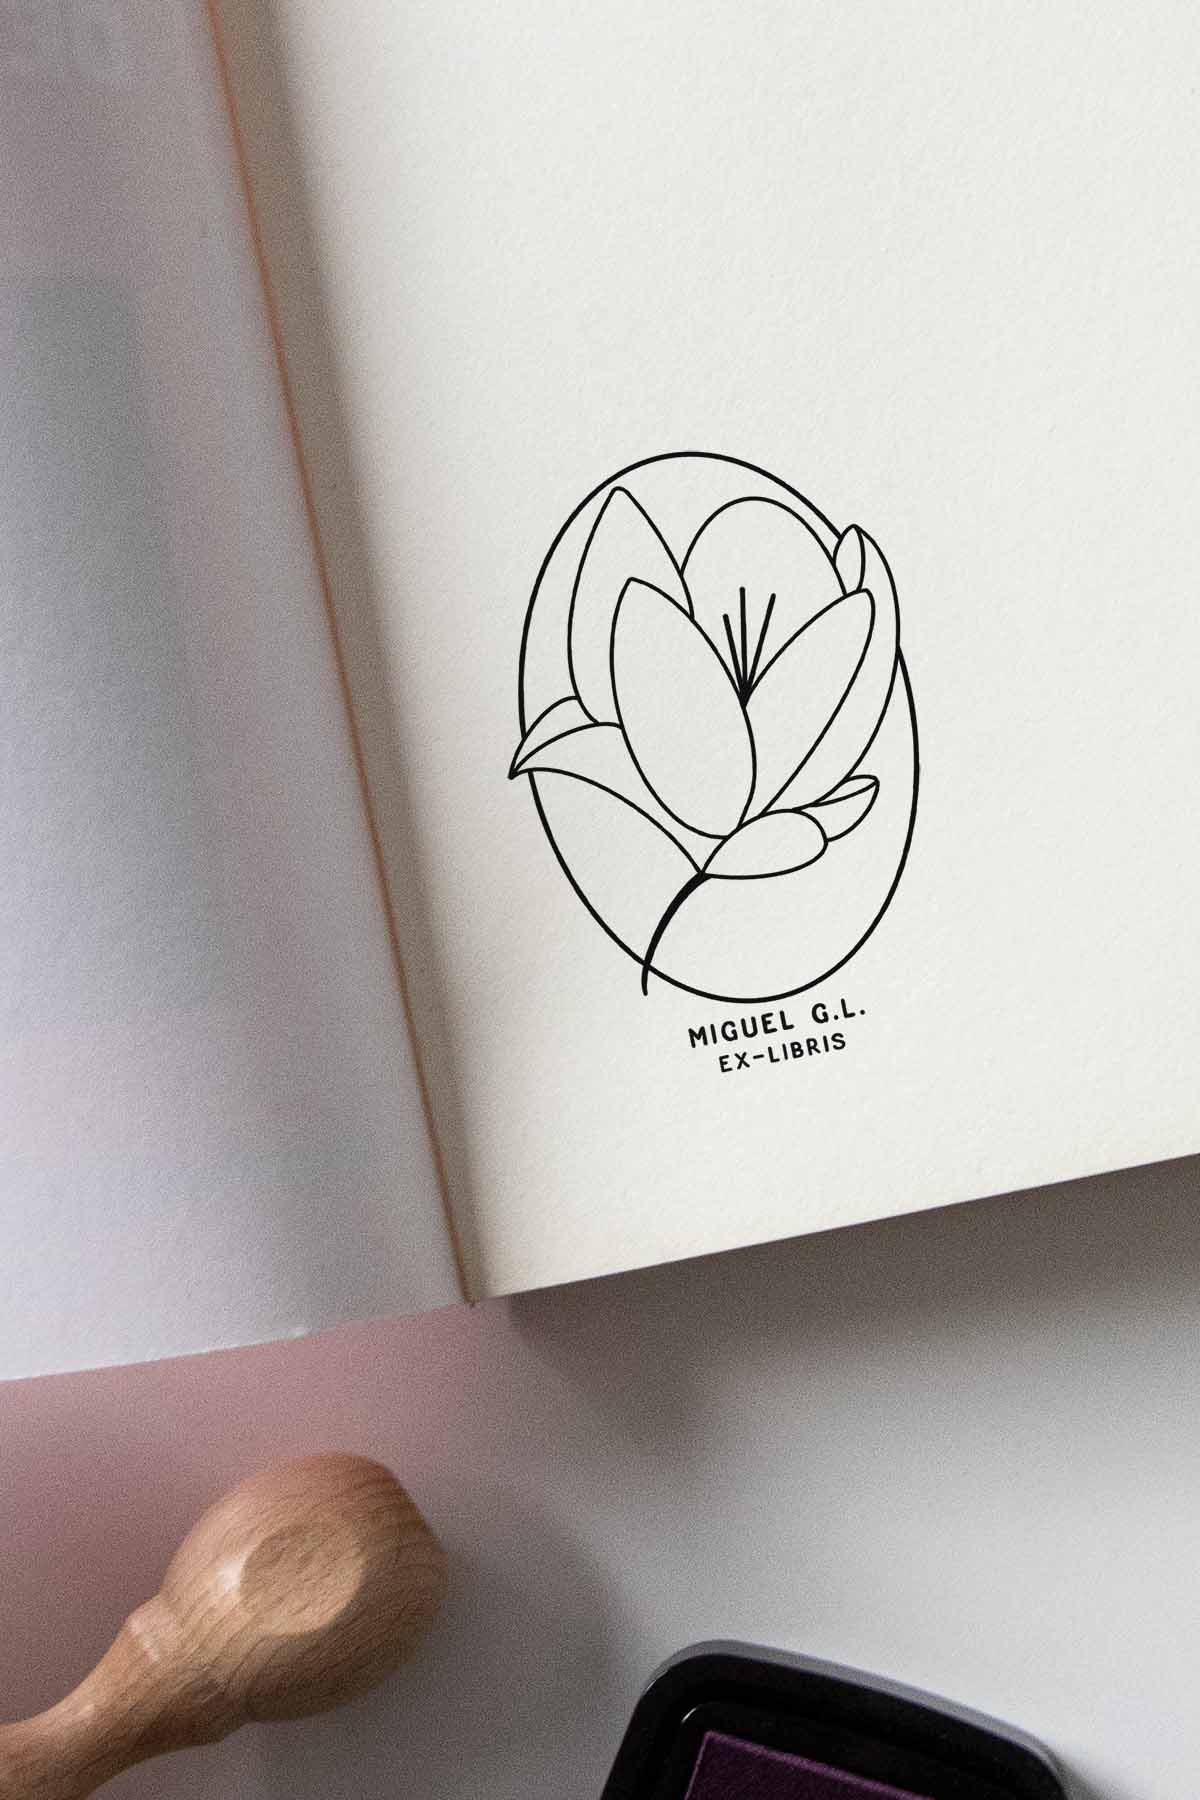 Portadilla de libro estampada con sello exlibris de una flor magnolia